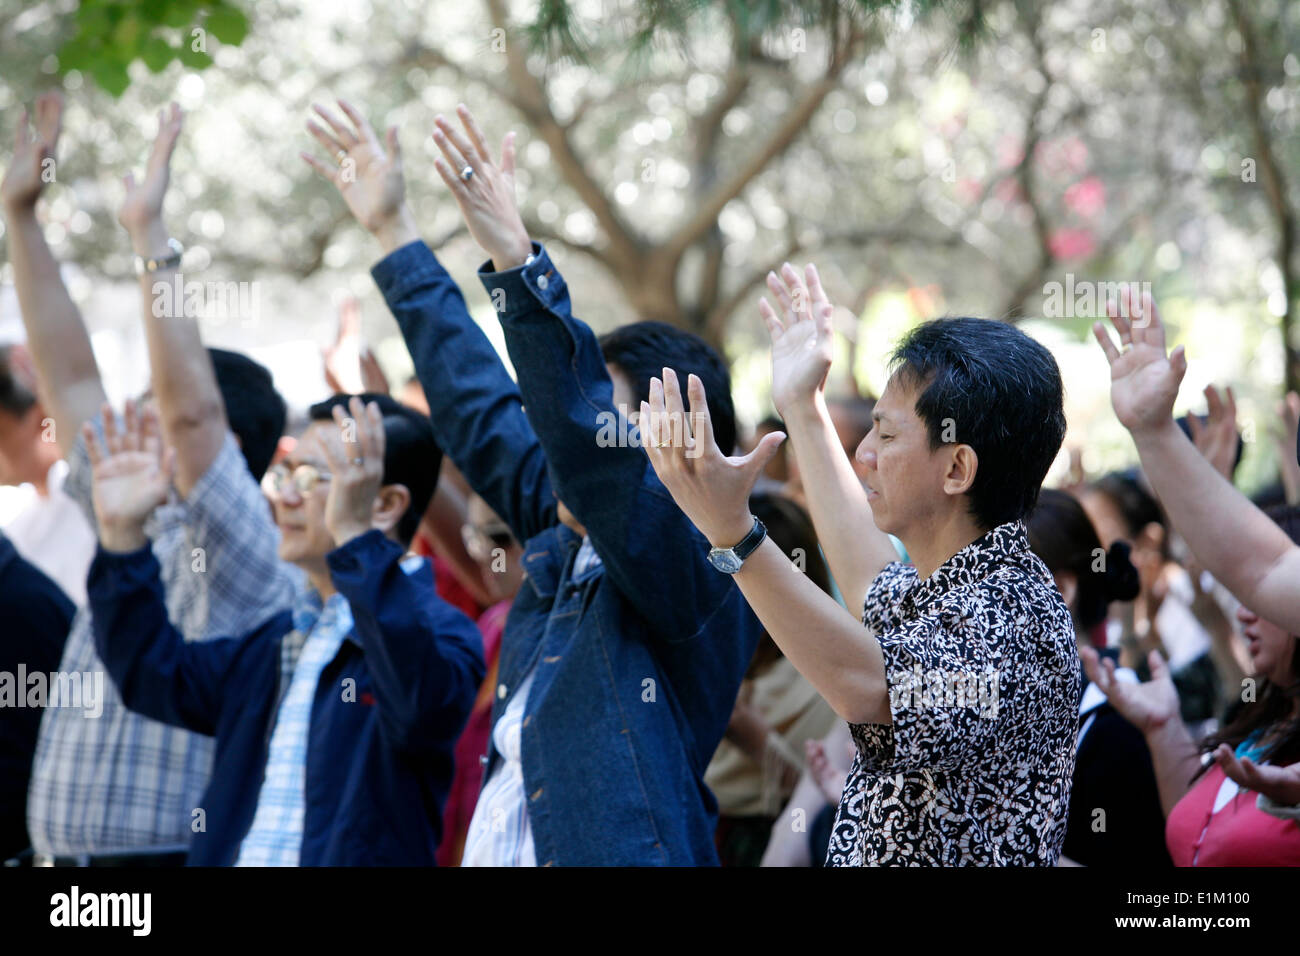 Los protestantes evangélicos orando en Jerusalén tumba del jardín Foto de stock